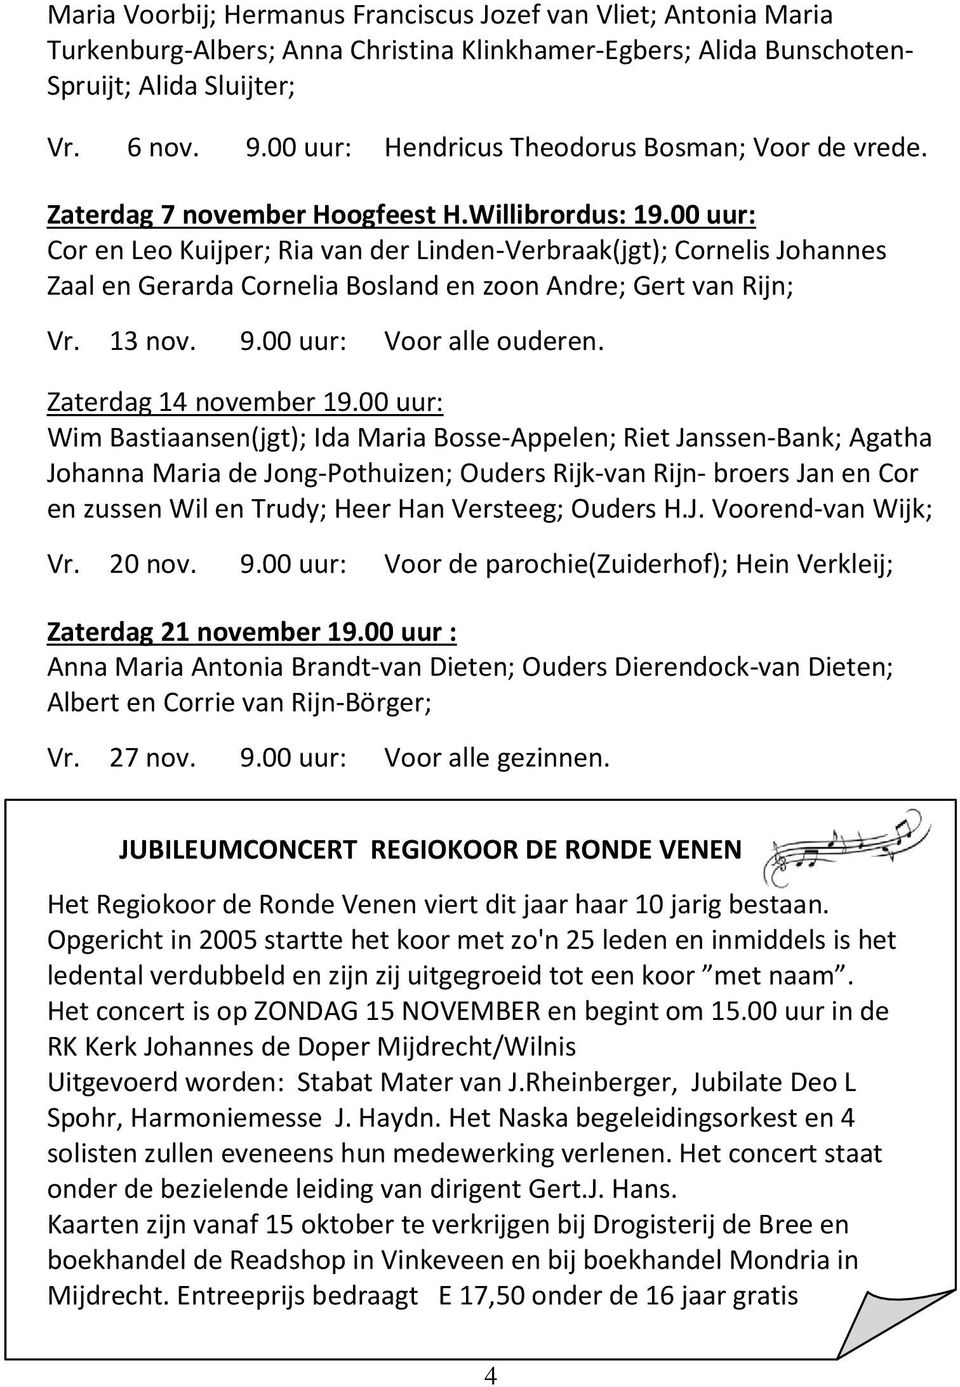 00 uur: Cor en Leo Kuijper; Ria van der Linden-Verbraak(jgt); Cornelis Johannes Zaal en Gerarda Cornelia Bosland en zoon Andre; Gert van Rijn; Vr. 13 nov. 9.00 uur: Voor alle ouderen.